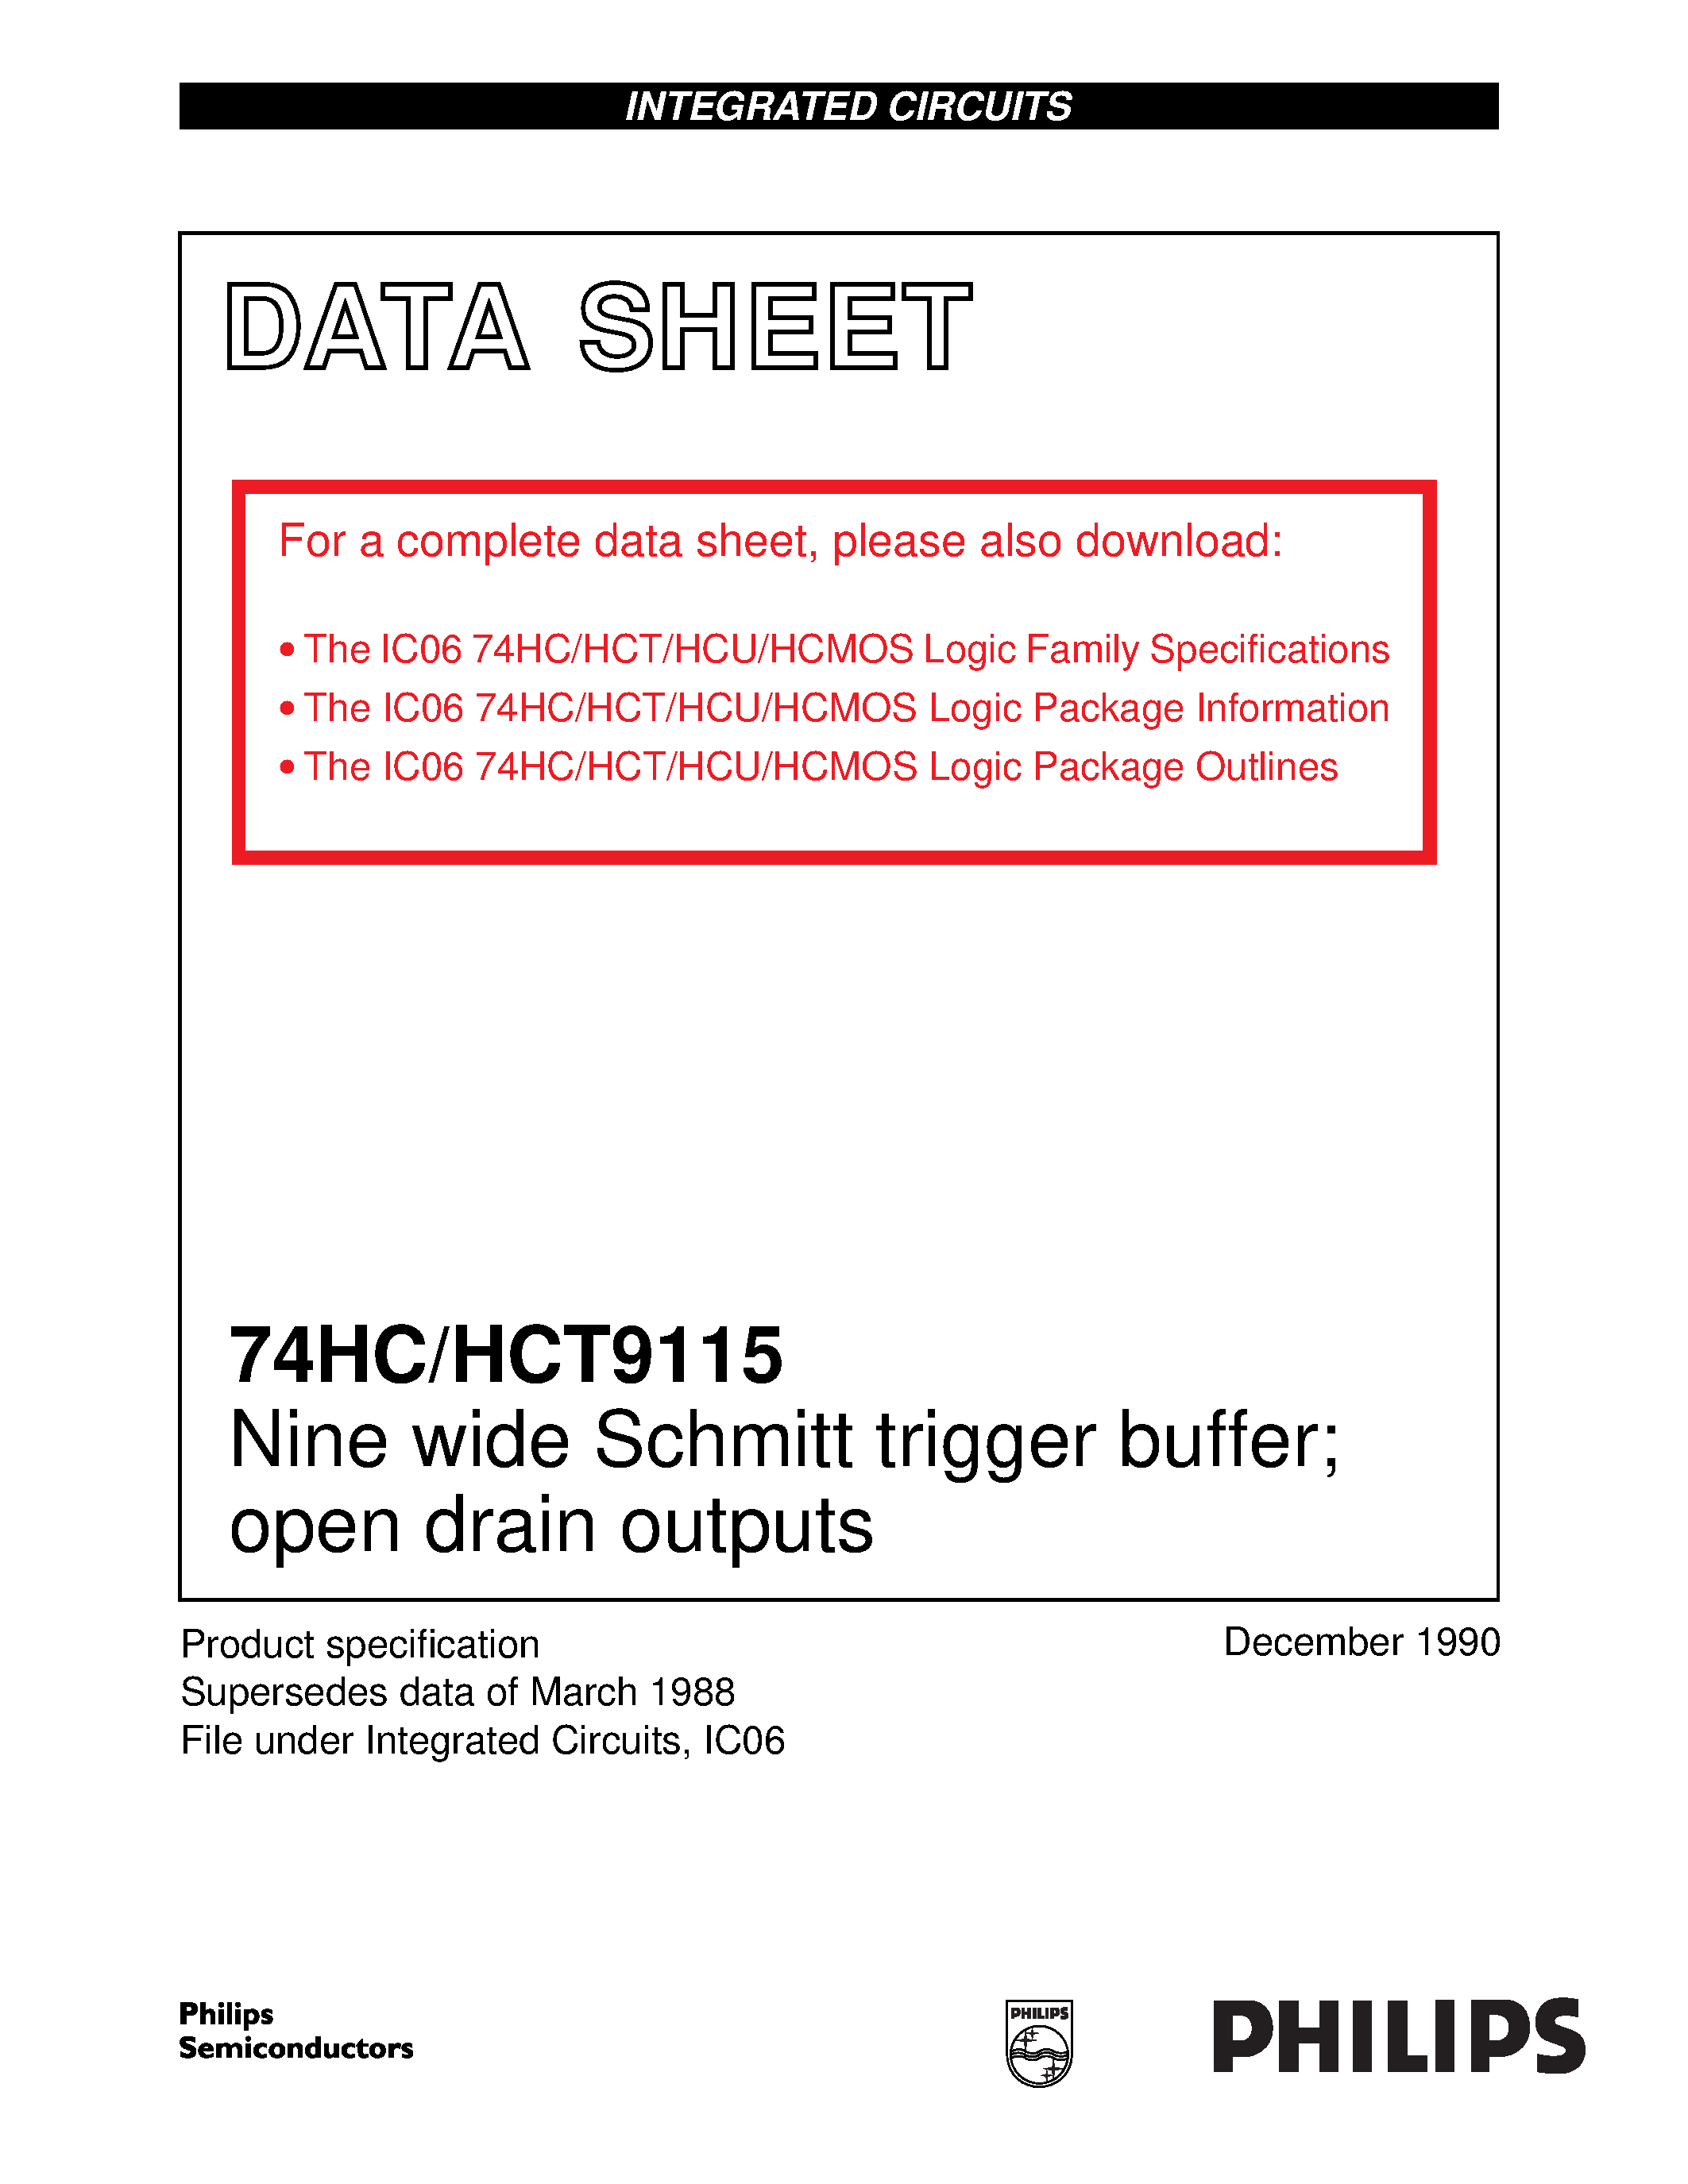 Даташит 74HCT9115 - Nine wide Schmitt trigger buffer; open drain outputs страница 1